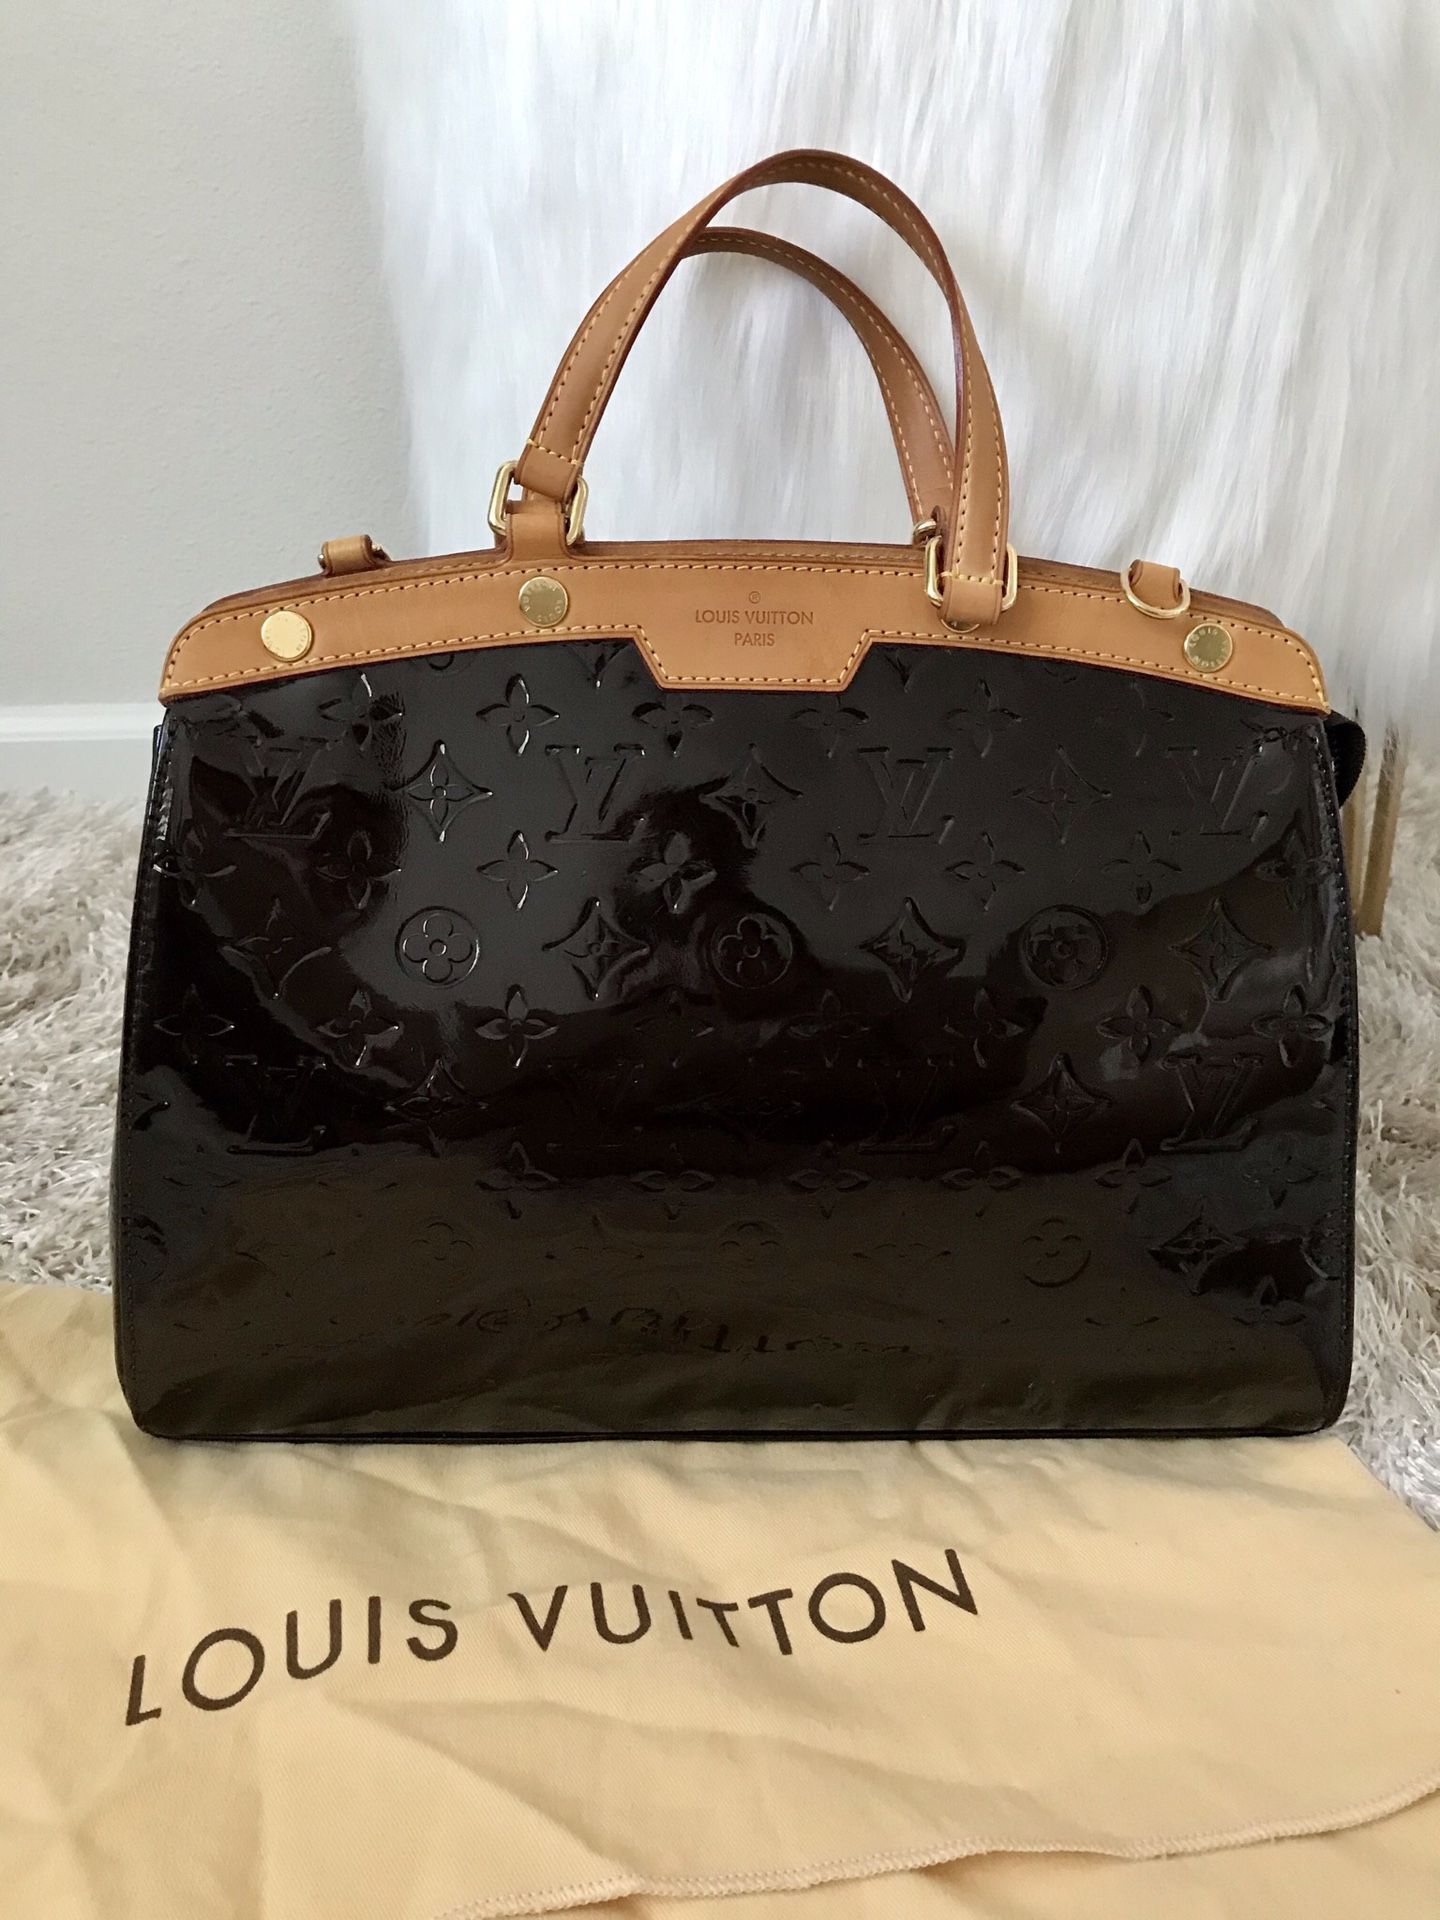 Authentic Louis Vuitton Brea MM Vernis - EXCELLENT